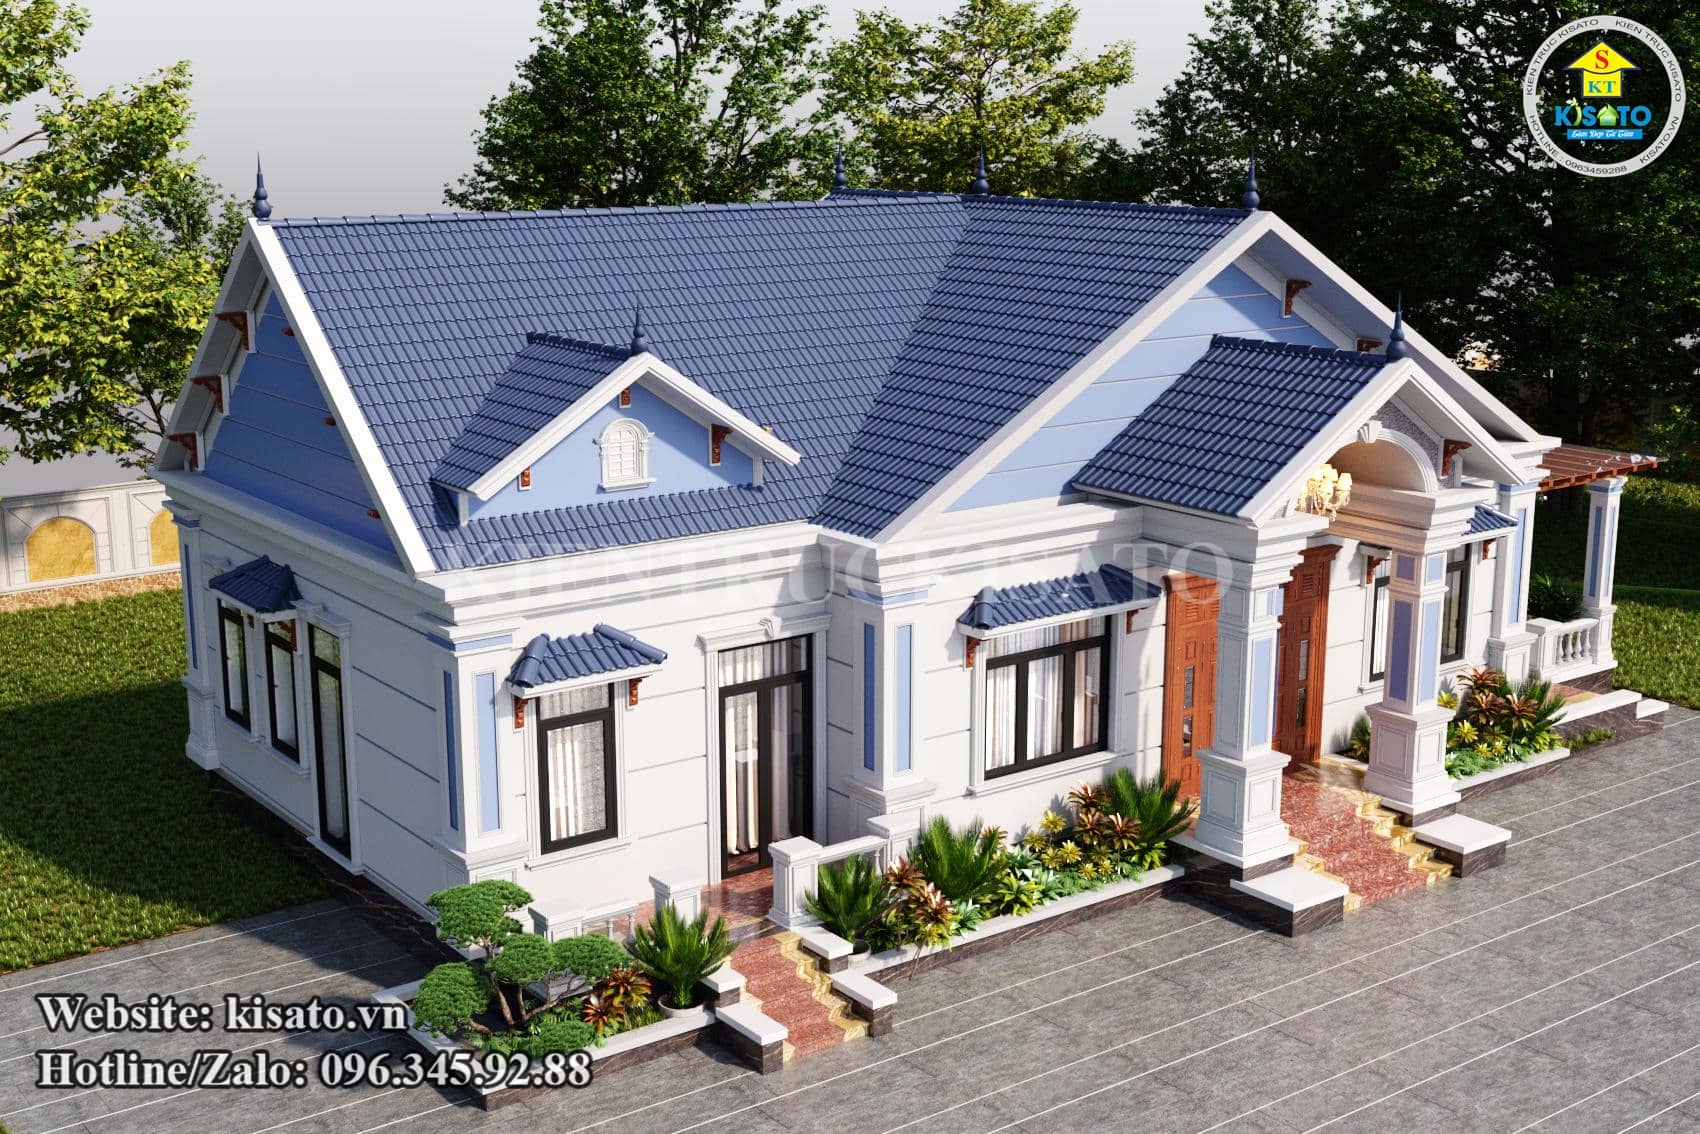 Phối cảnh 3D mẫu nhà cấp 4 tân cổ điển đẹp đáng tham khảo nhất năm tại Phú Thọ